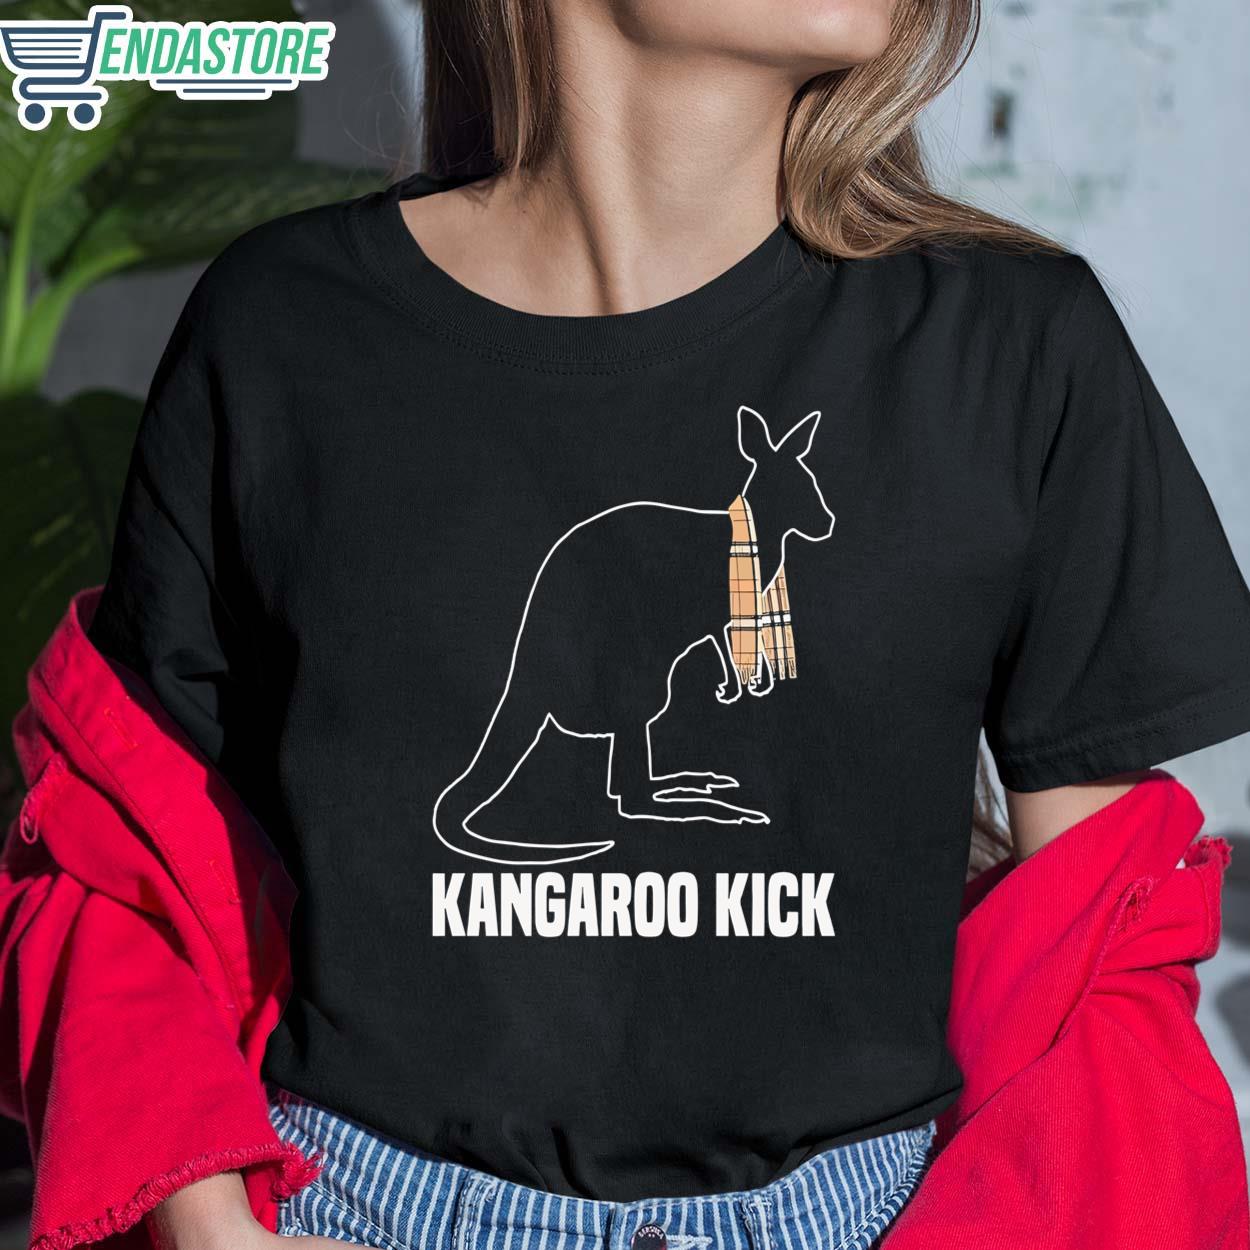 MJF Kangaroo Kick Shirt